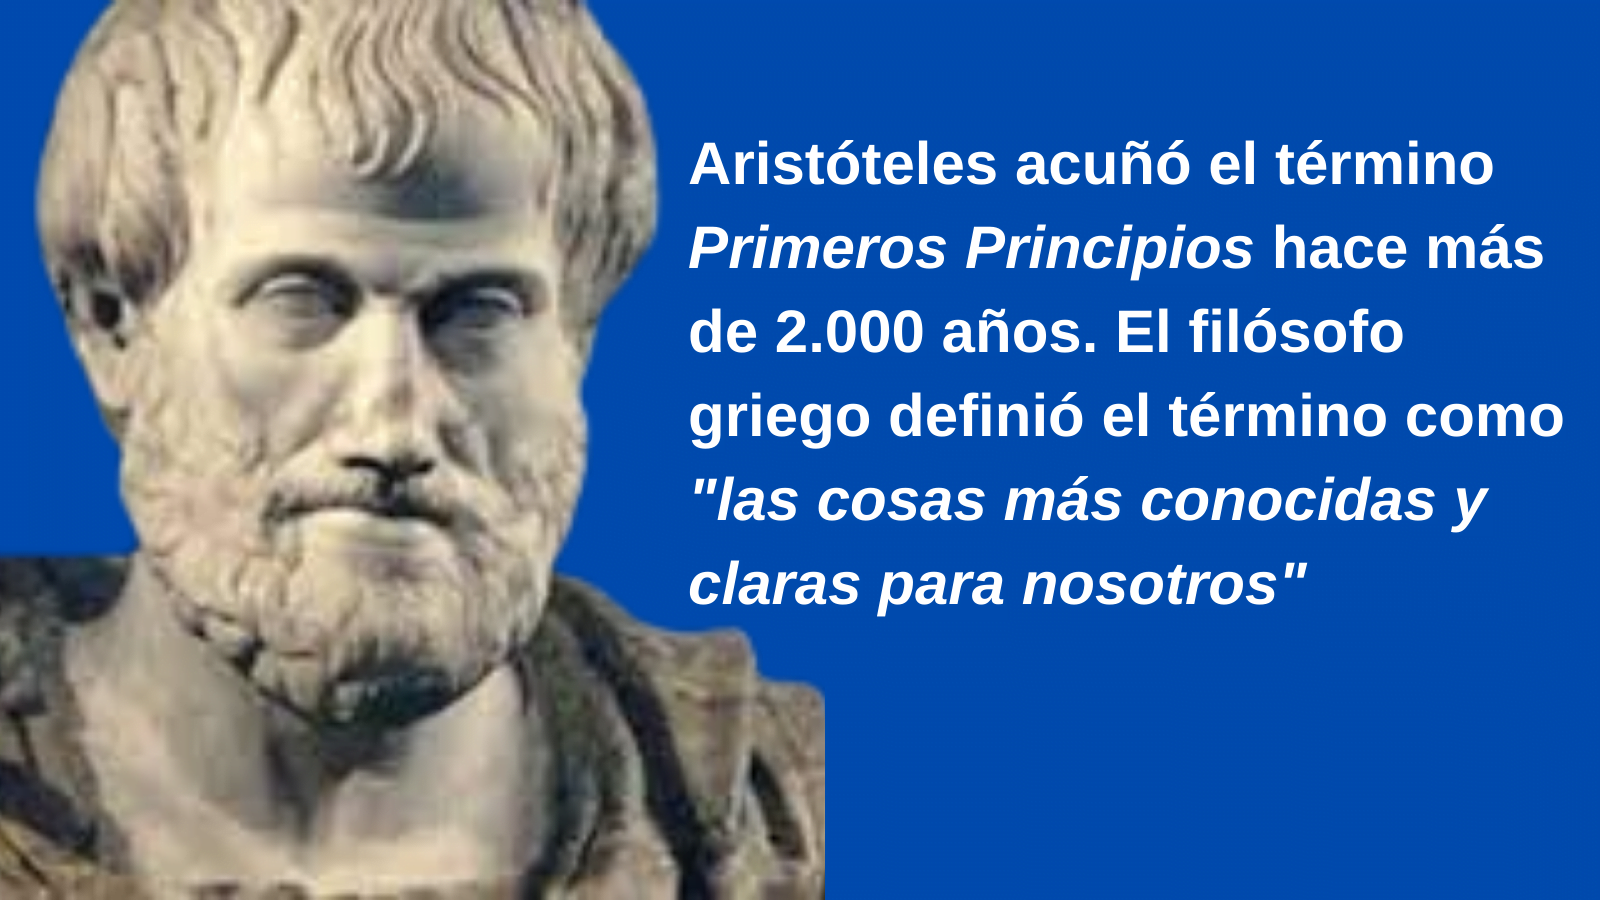 Aristóteles acuñó el término "Primeros Principios"